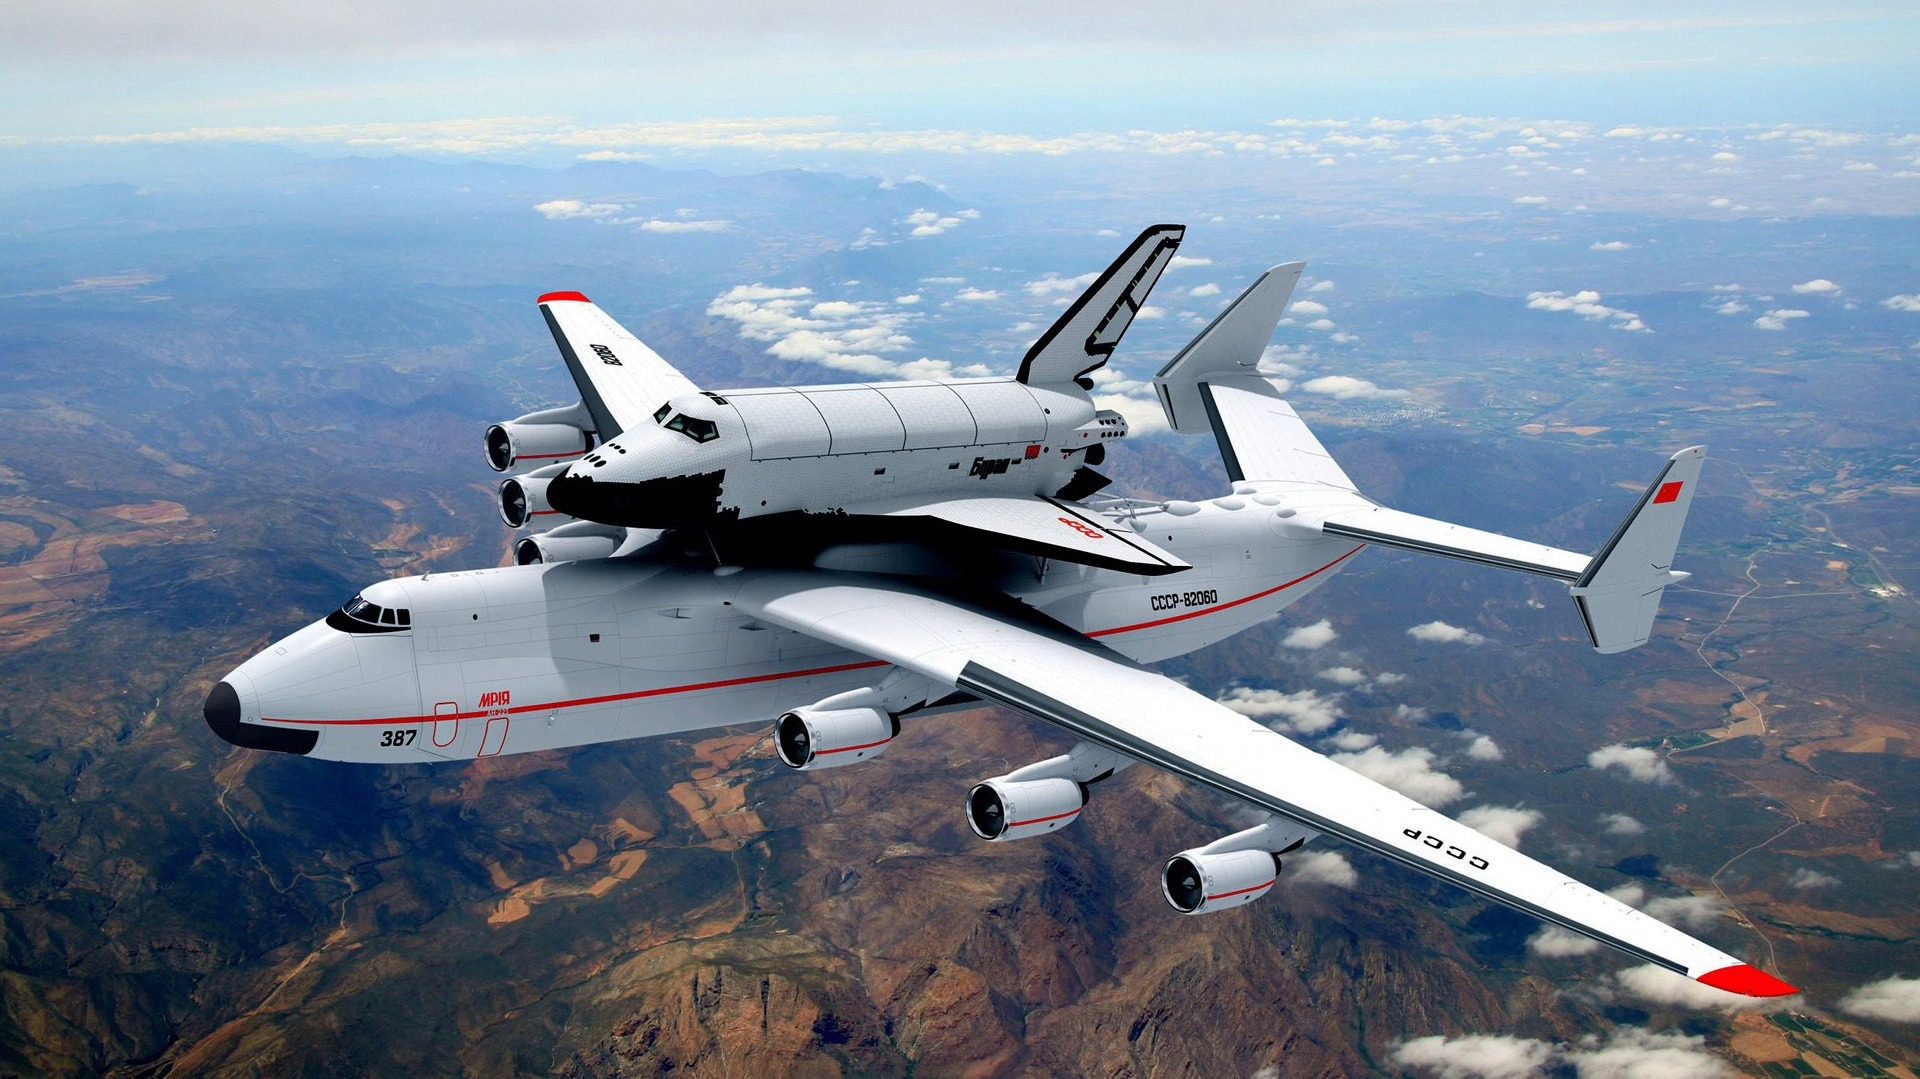 Многоразовый орбитальный корабль «Буран» на самолёте Ан-225 «Мрия».